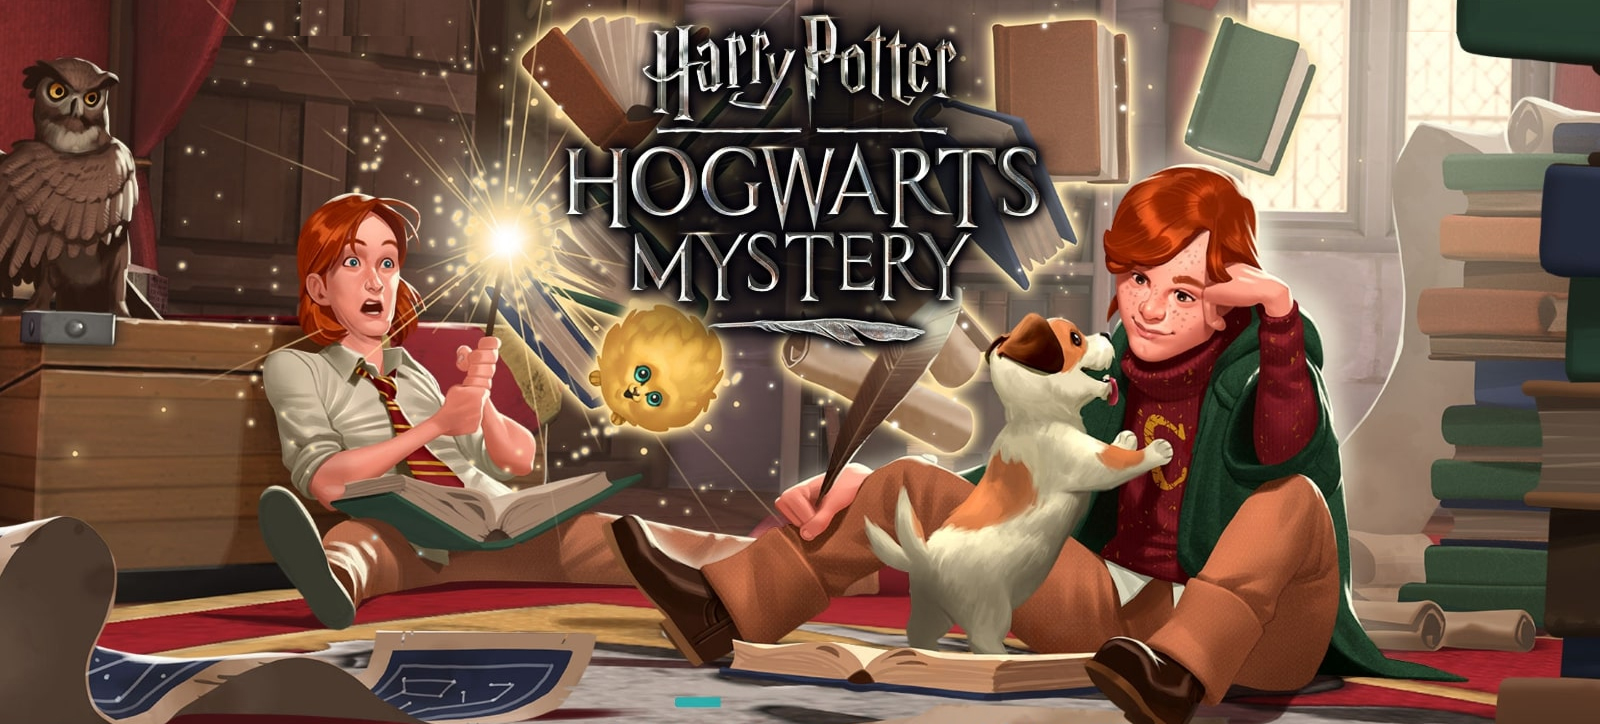 respostas aula de história da magia harry potter